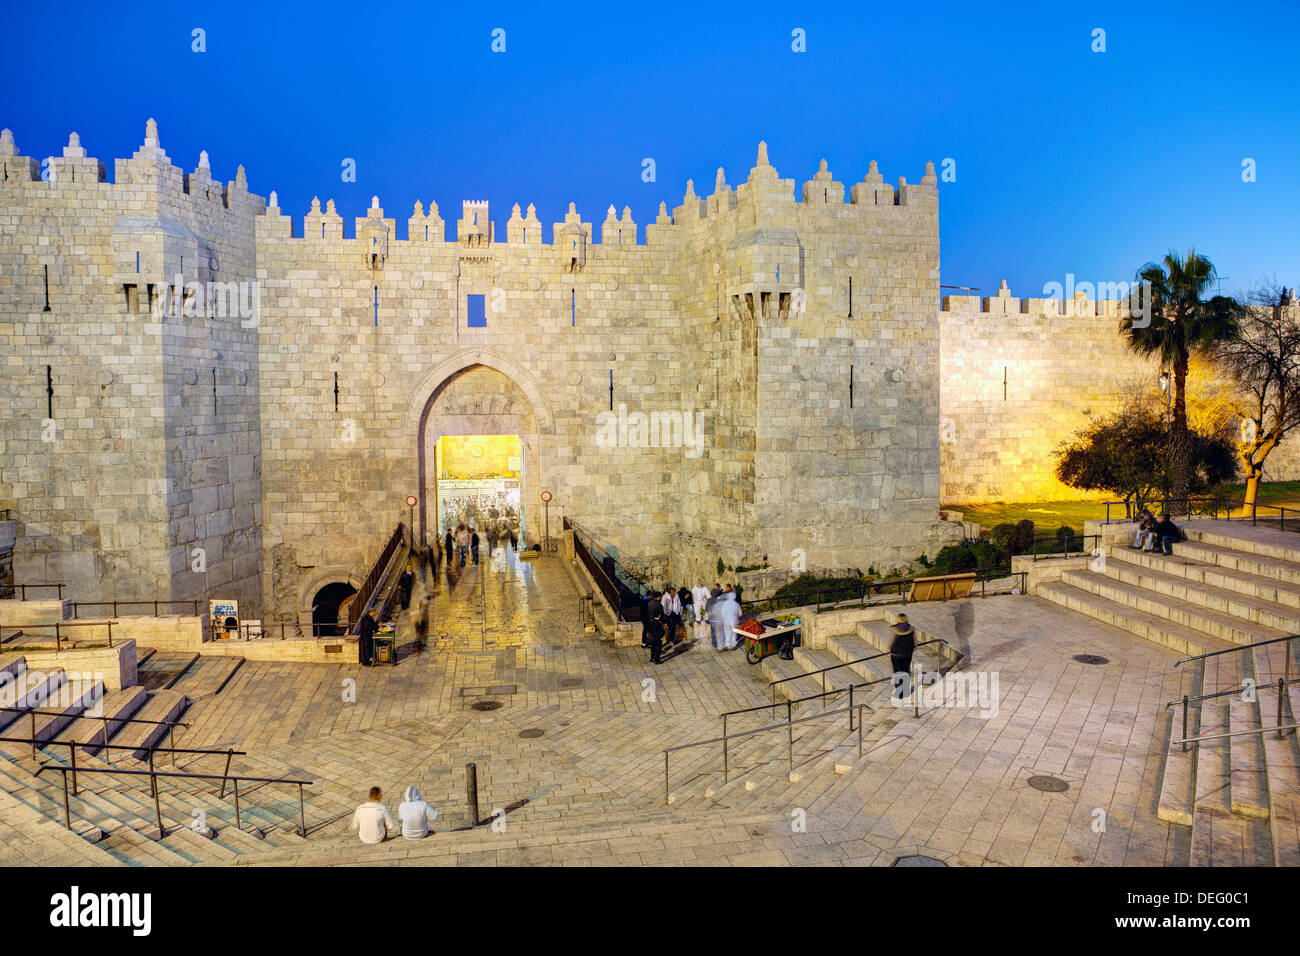 La porte de Damas, Vieille Ville, site du patrimoine mondial de l'UNESCO, Jérusalem, Israël, Moyen Orient Banque D'Images